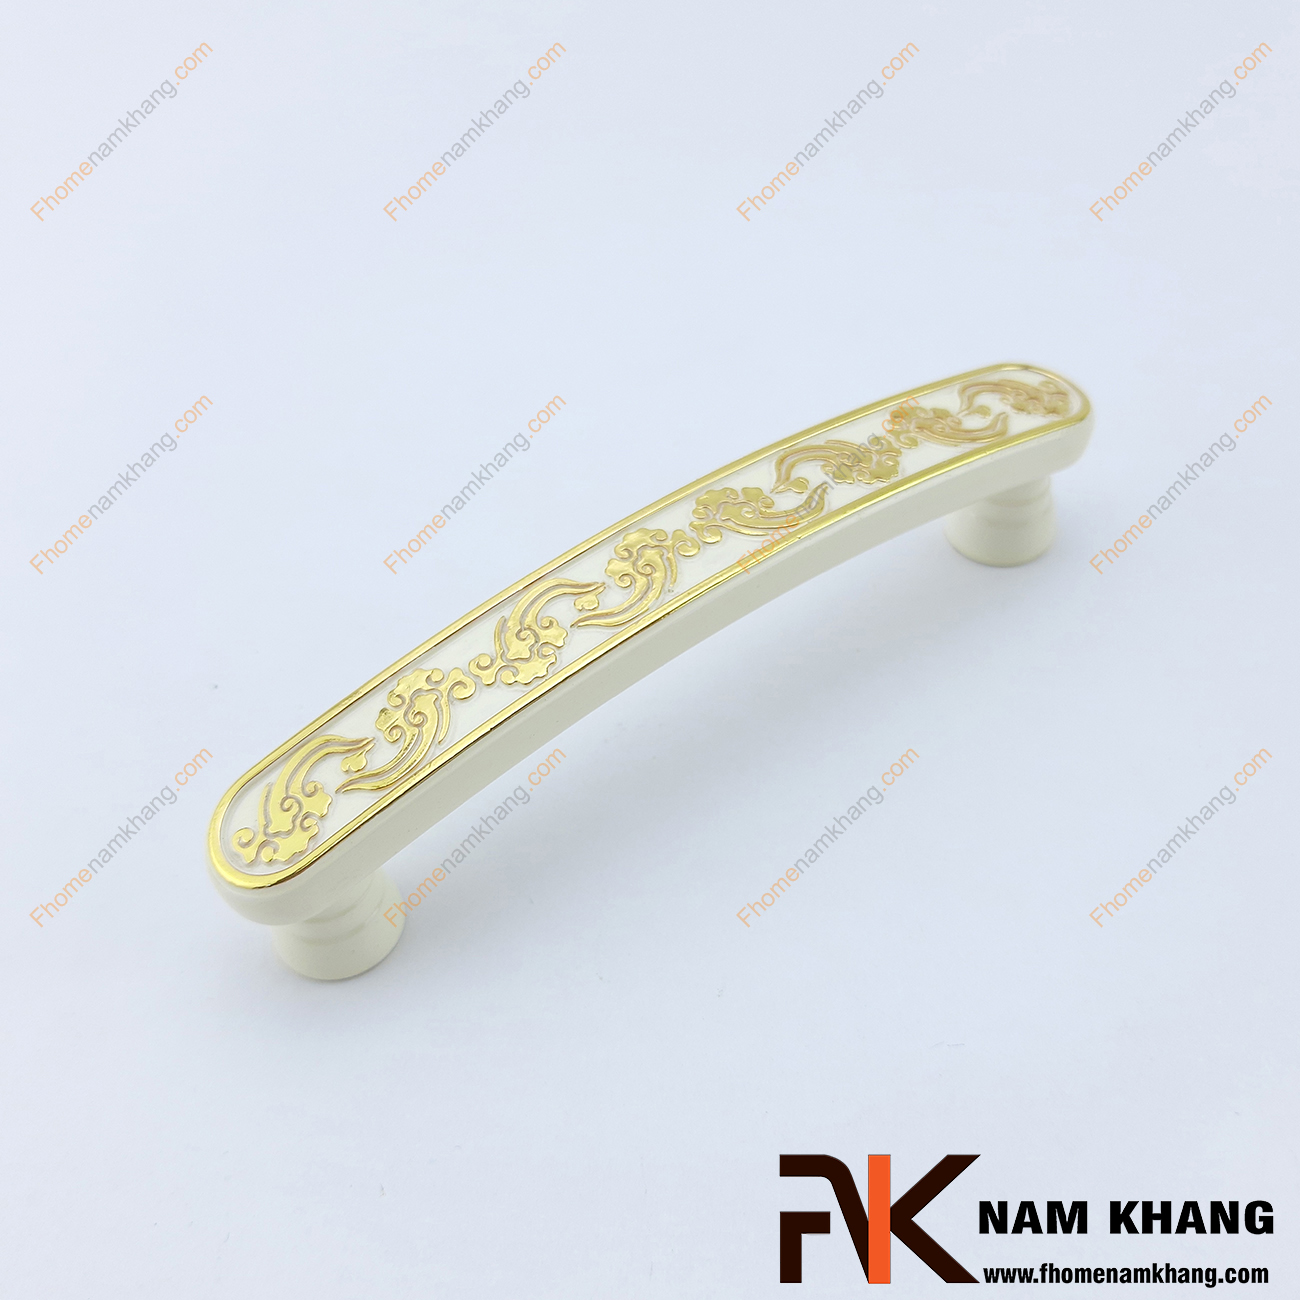 Tay nắm tủ màu trắng viền vàng NK257-T, một sản phẩm tay nắm thương hiệu có chất lượng được đảm bảo tốt nhất. 